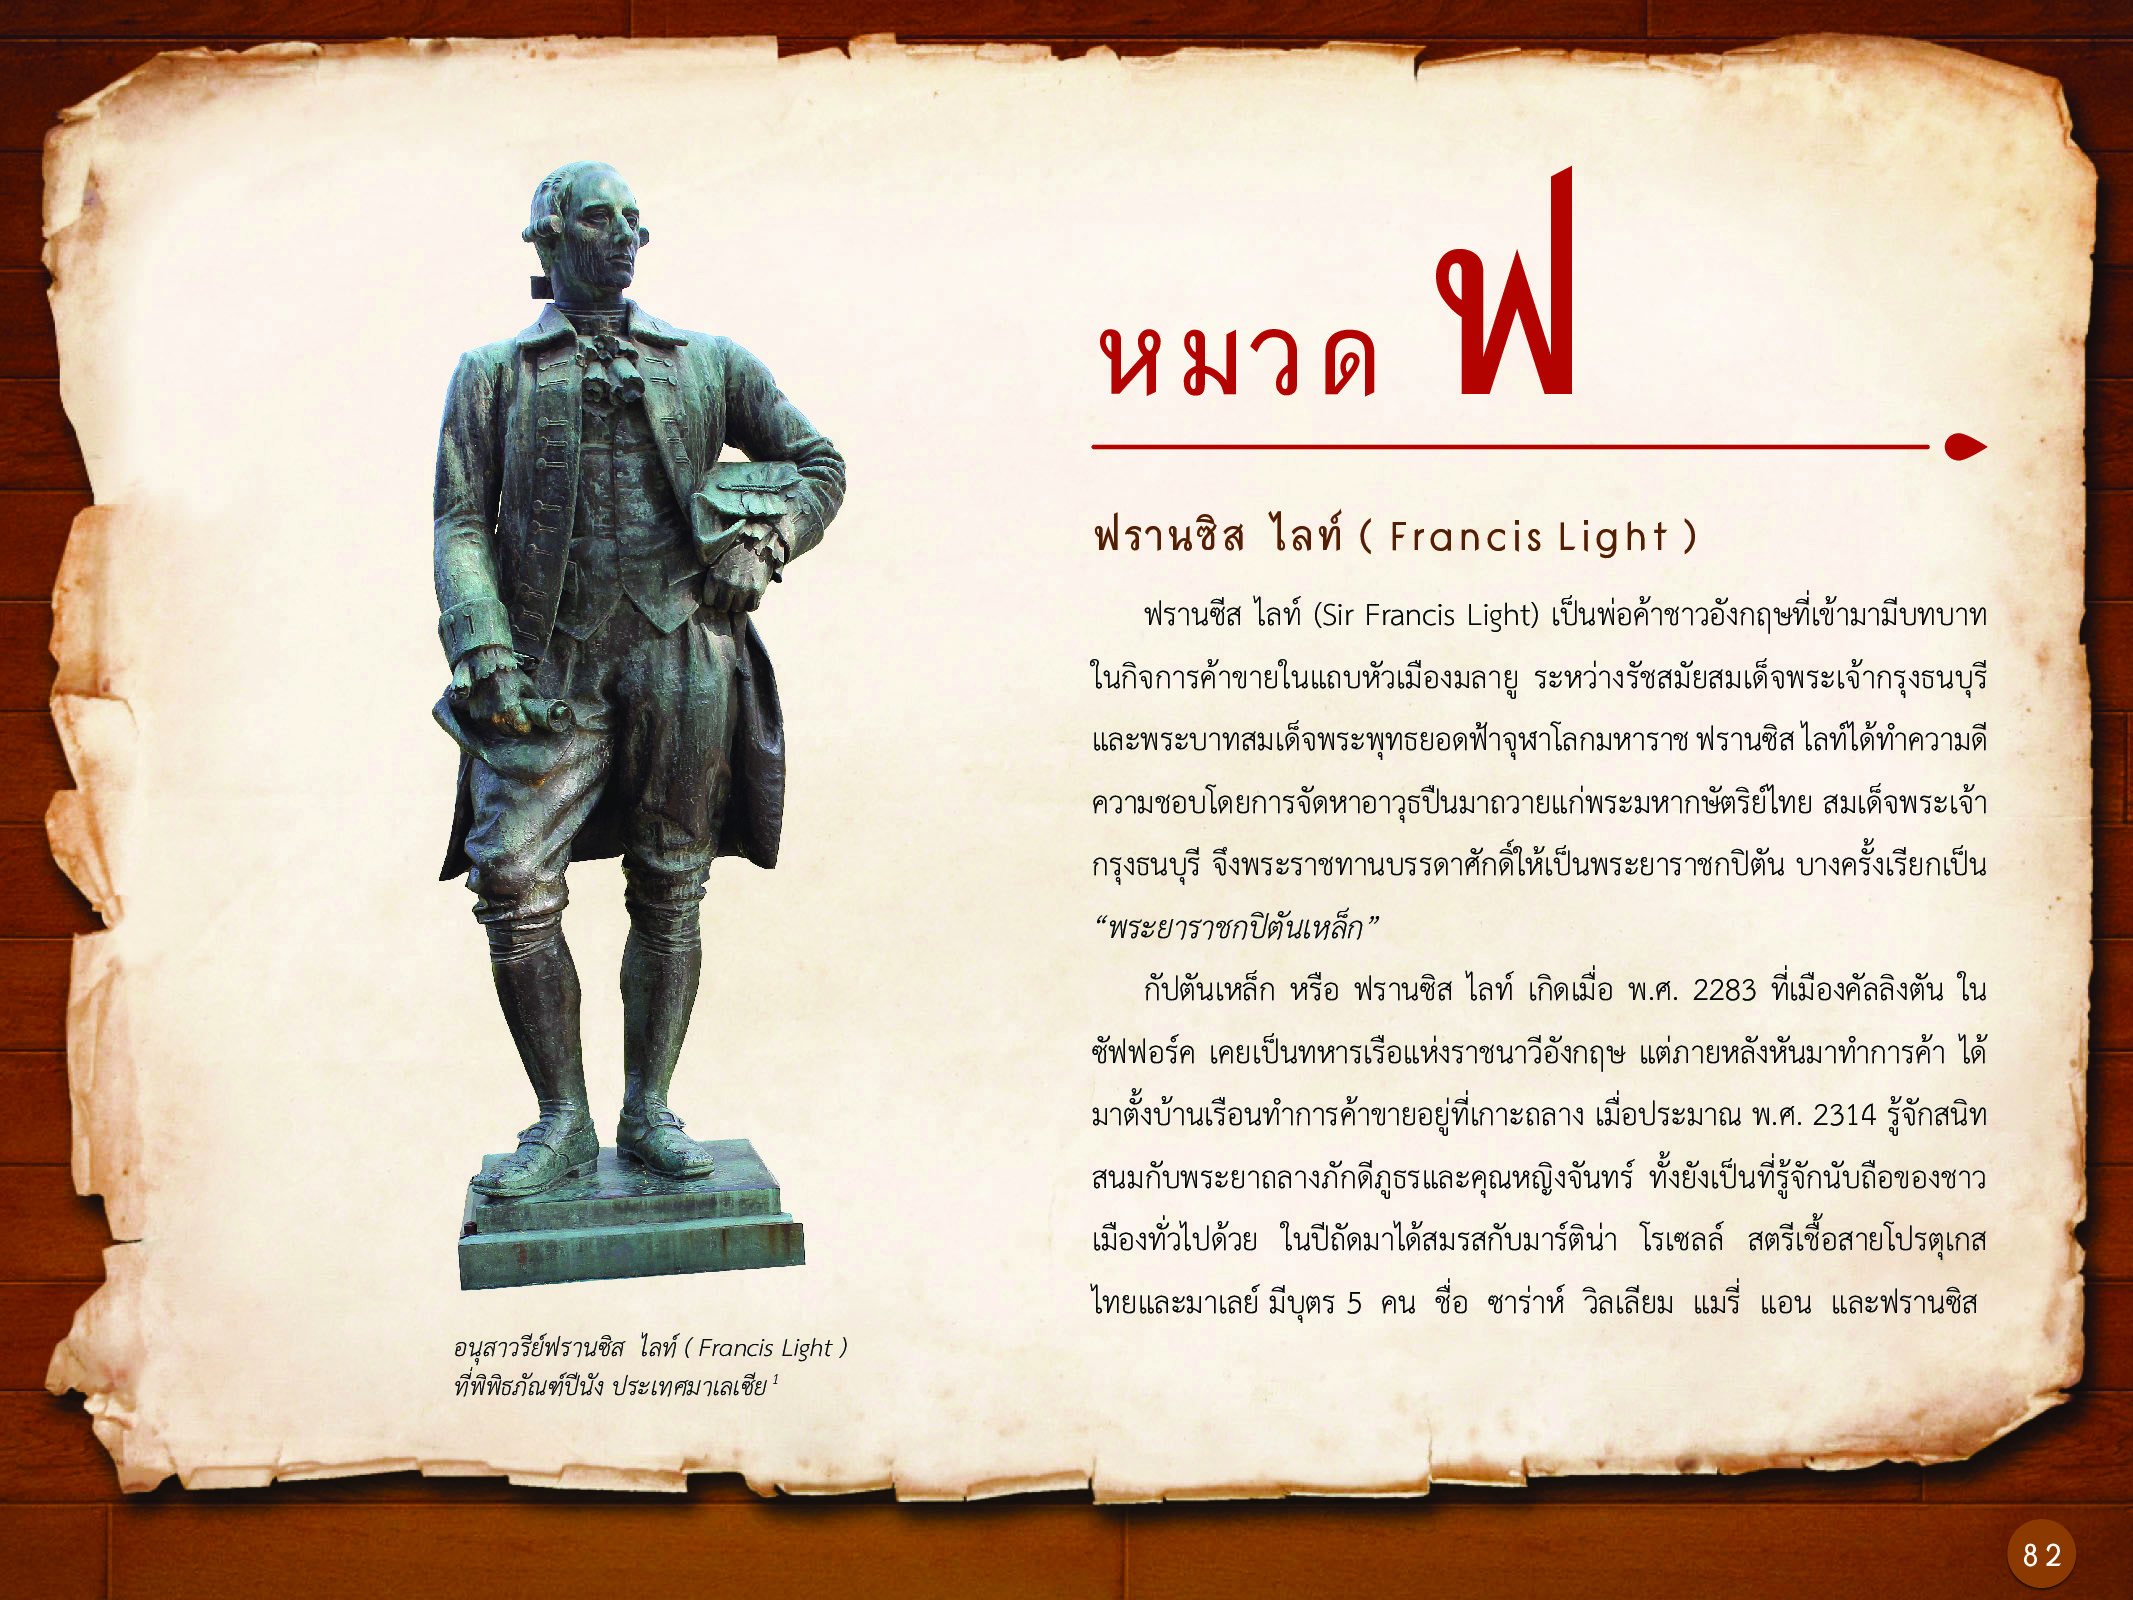 ประวัติศาสตร์กรุงธนบุรี ./images/history_dhonburi/82.jpg